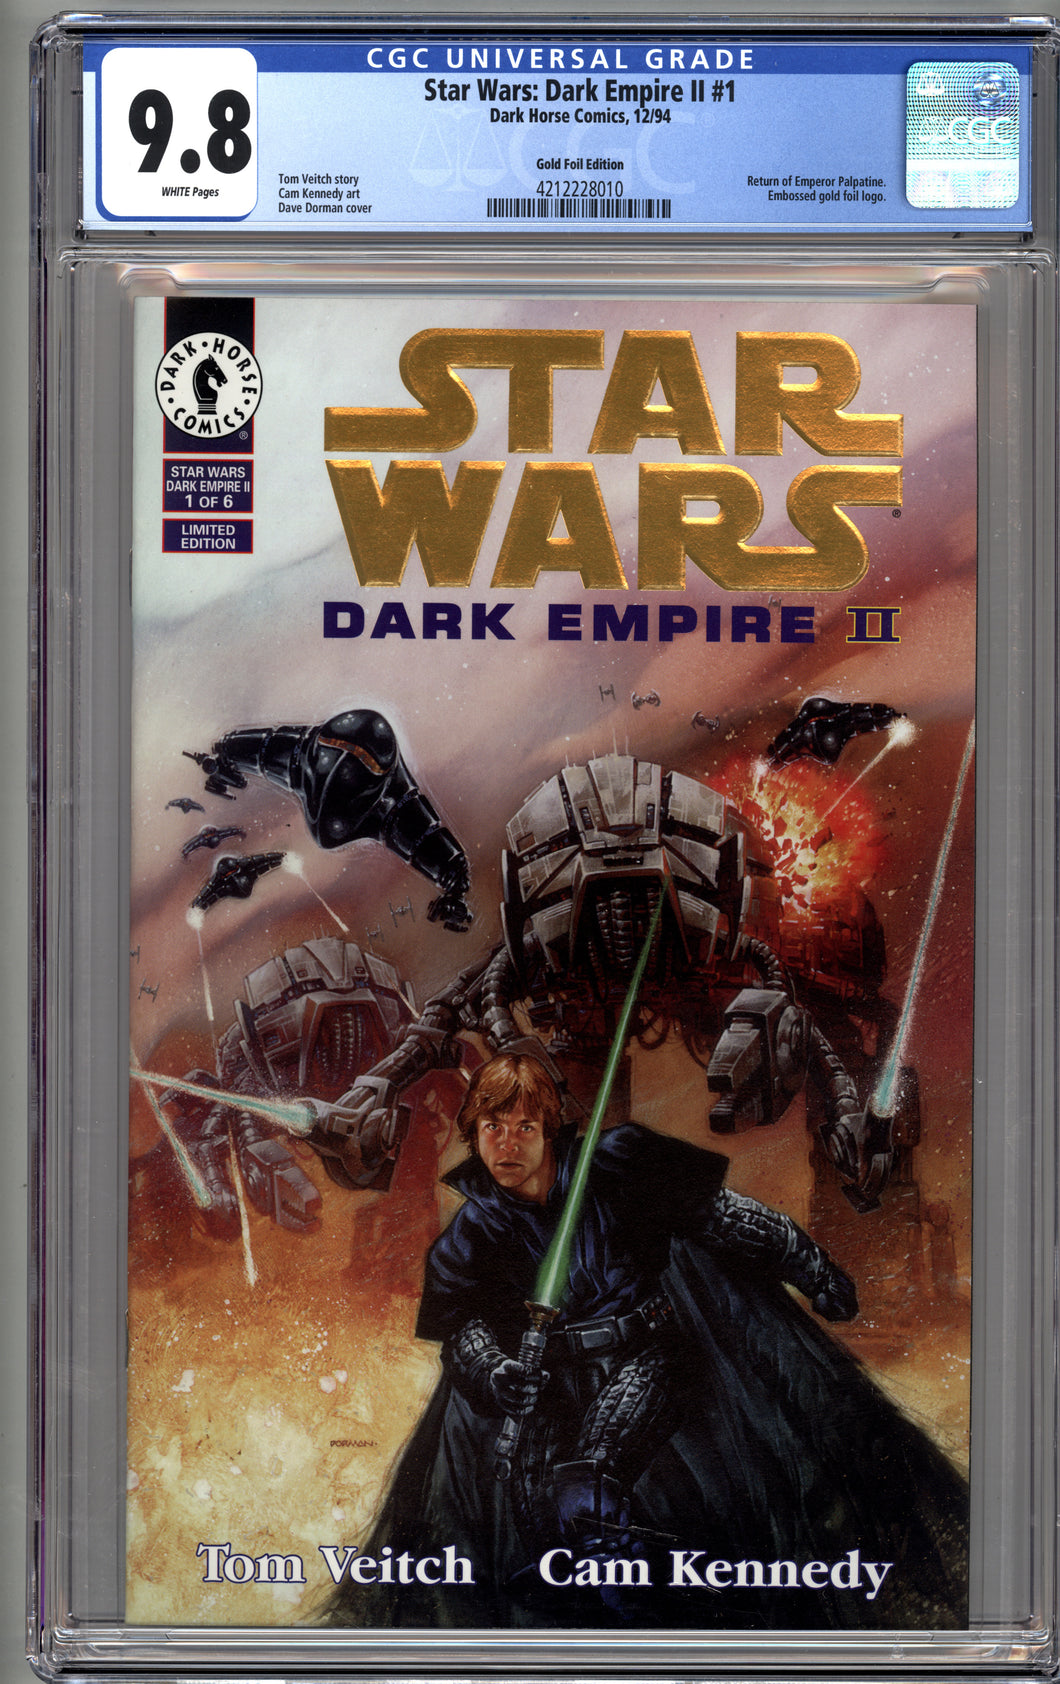 STAR WARS DARK EMPIRE II #1 (1994 Dark Horse) CGC 9.8 NM/M GOLD FOIL EDITION